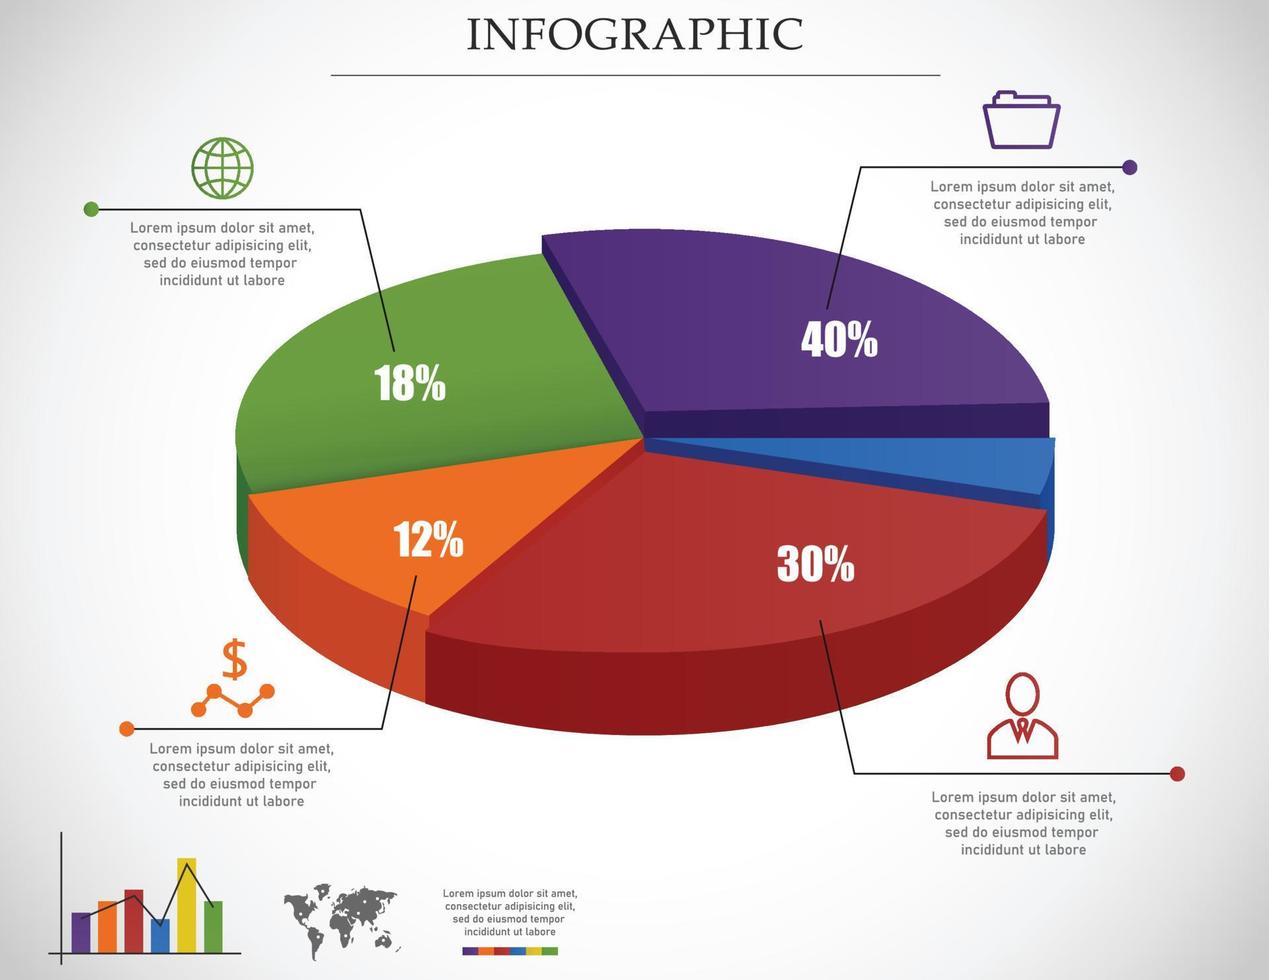 infografía de gráfico circular de negocios para sus documentos, informes, presentaciones vector